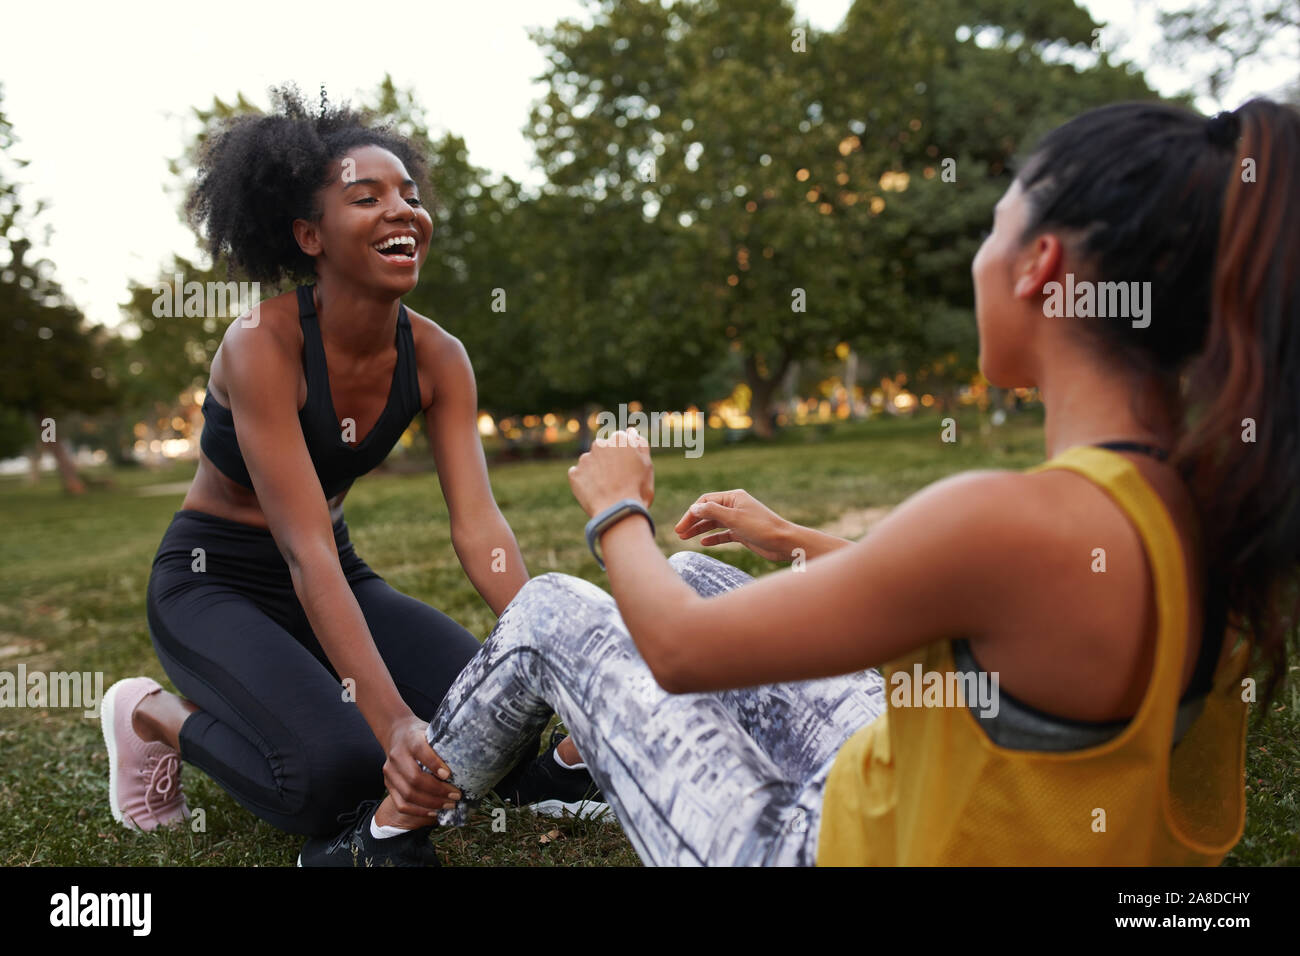 Fröhlicher junger diverse weibliche Freunde lachen tut ab Crunches auf grünem Gras im Park - Freunde zusammen lachen, während sie Übung im Freien Stockfoto